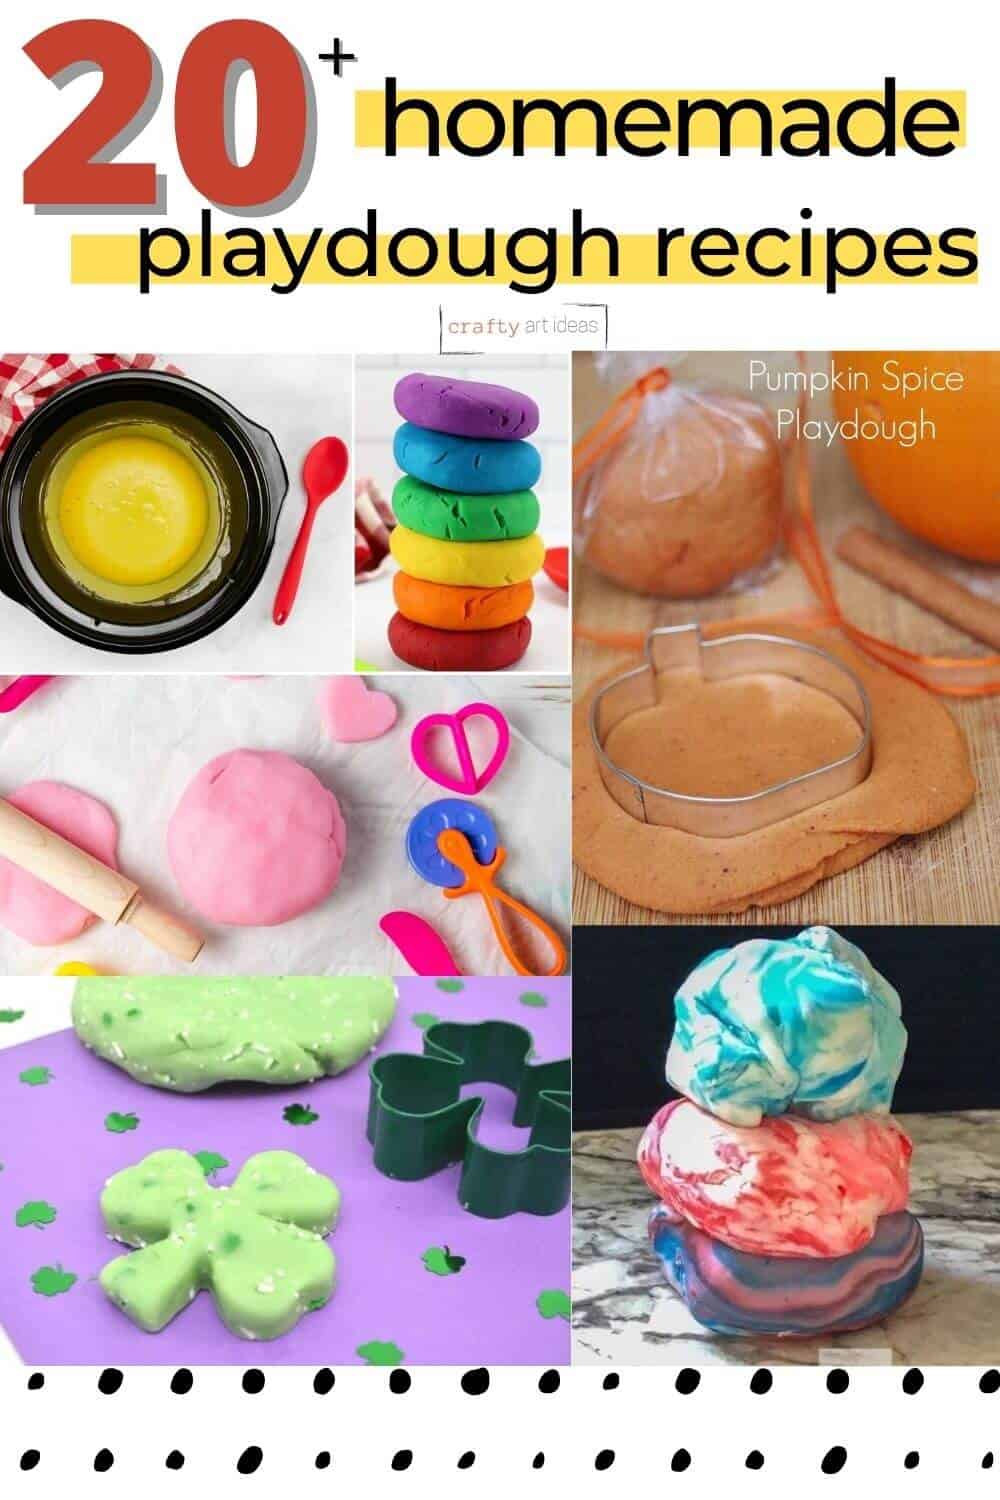 20+ homemade playdough recipes with 5 different playdough ideas